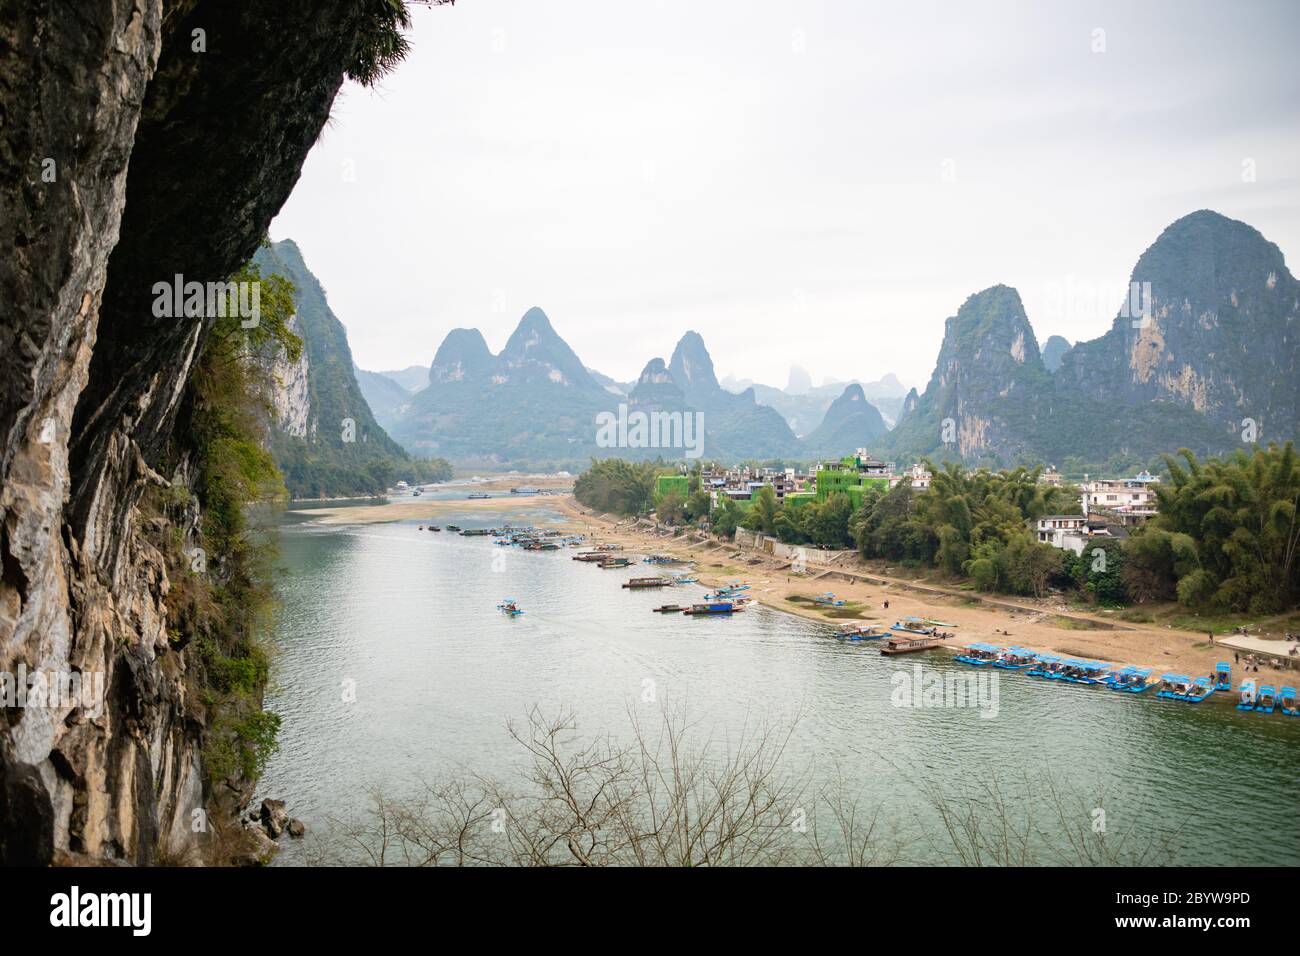 La vista del fiume li e le montagne / colline carsiche e le navi da crociera a Yangshuo, Guangxi, Cina, una delle destinazioni turistiche più popolari della Cina. Foto Stock